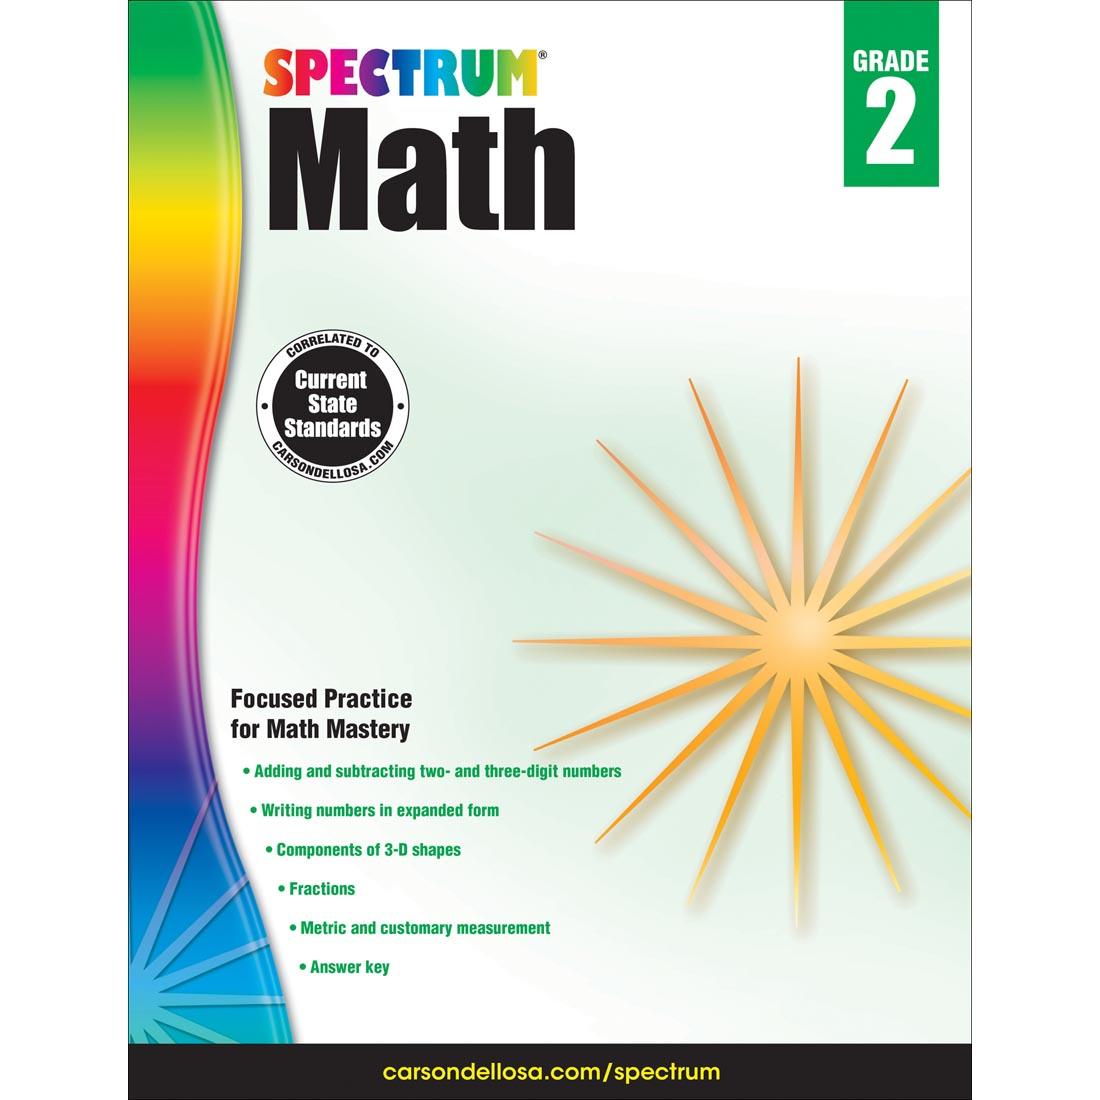 Spectrum Math Book by Carson Dellosa Grade 2